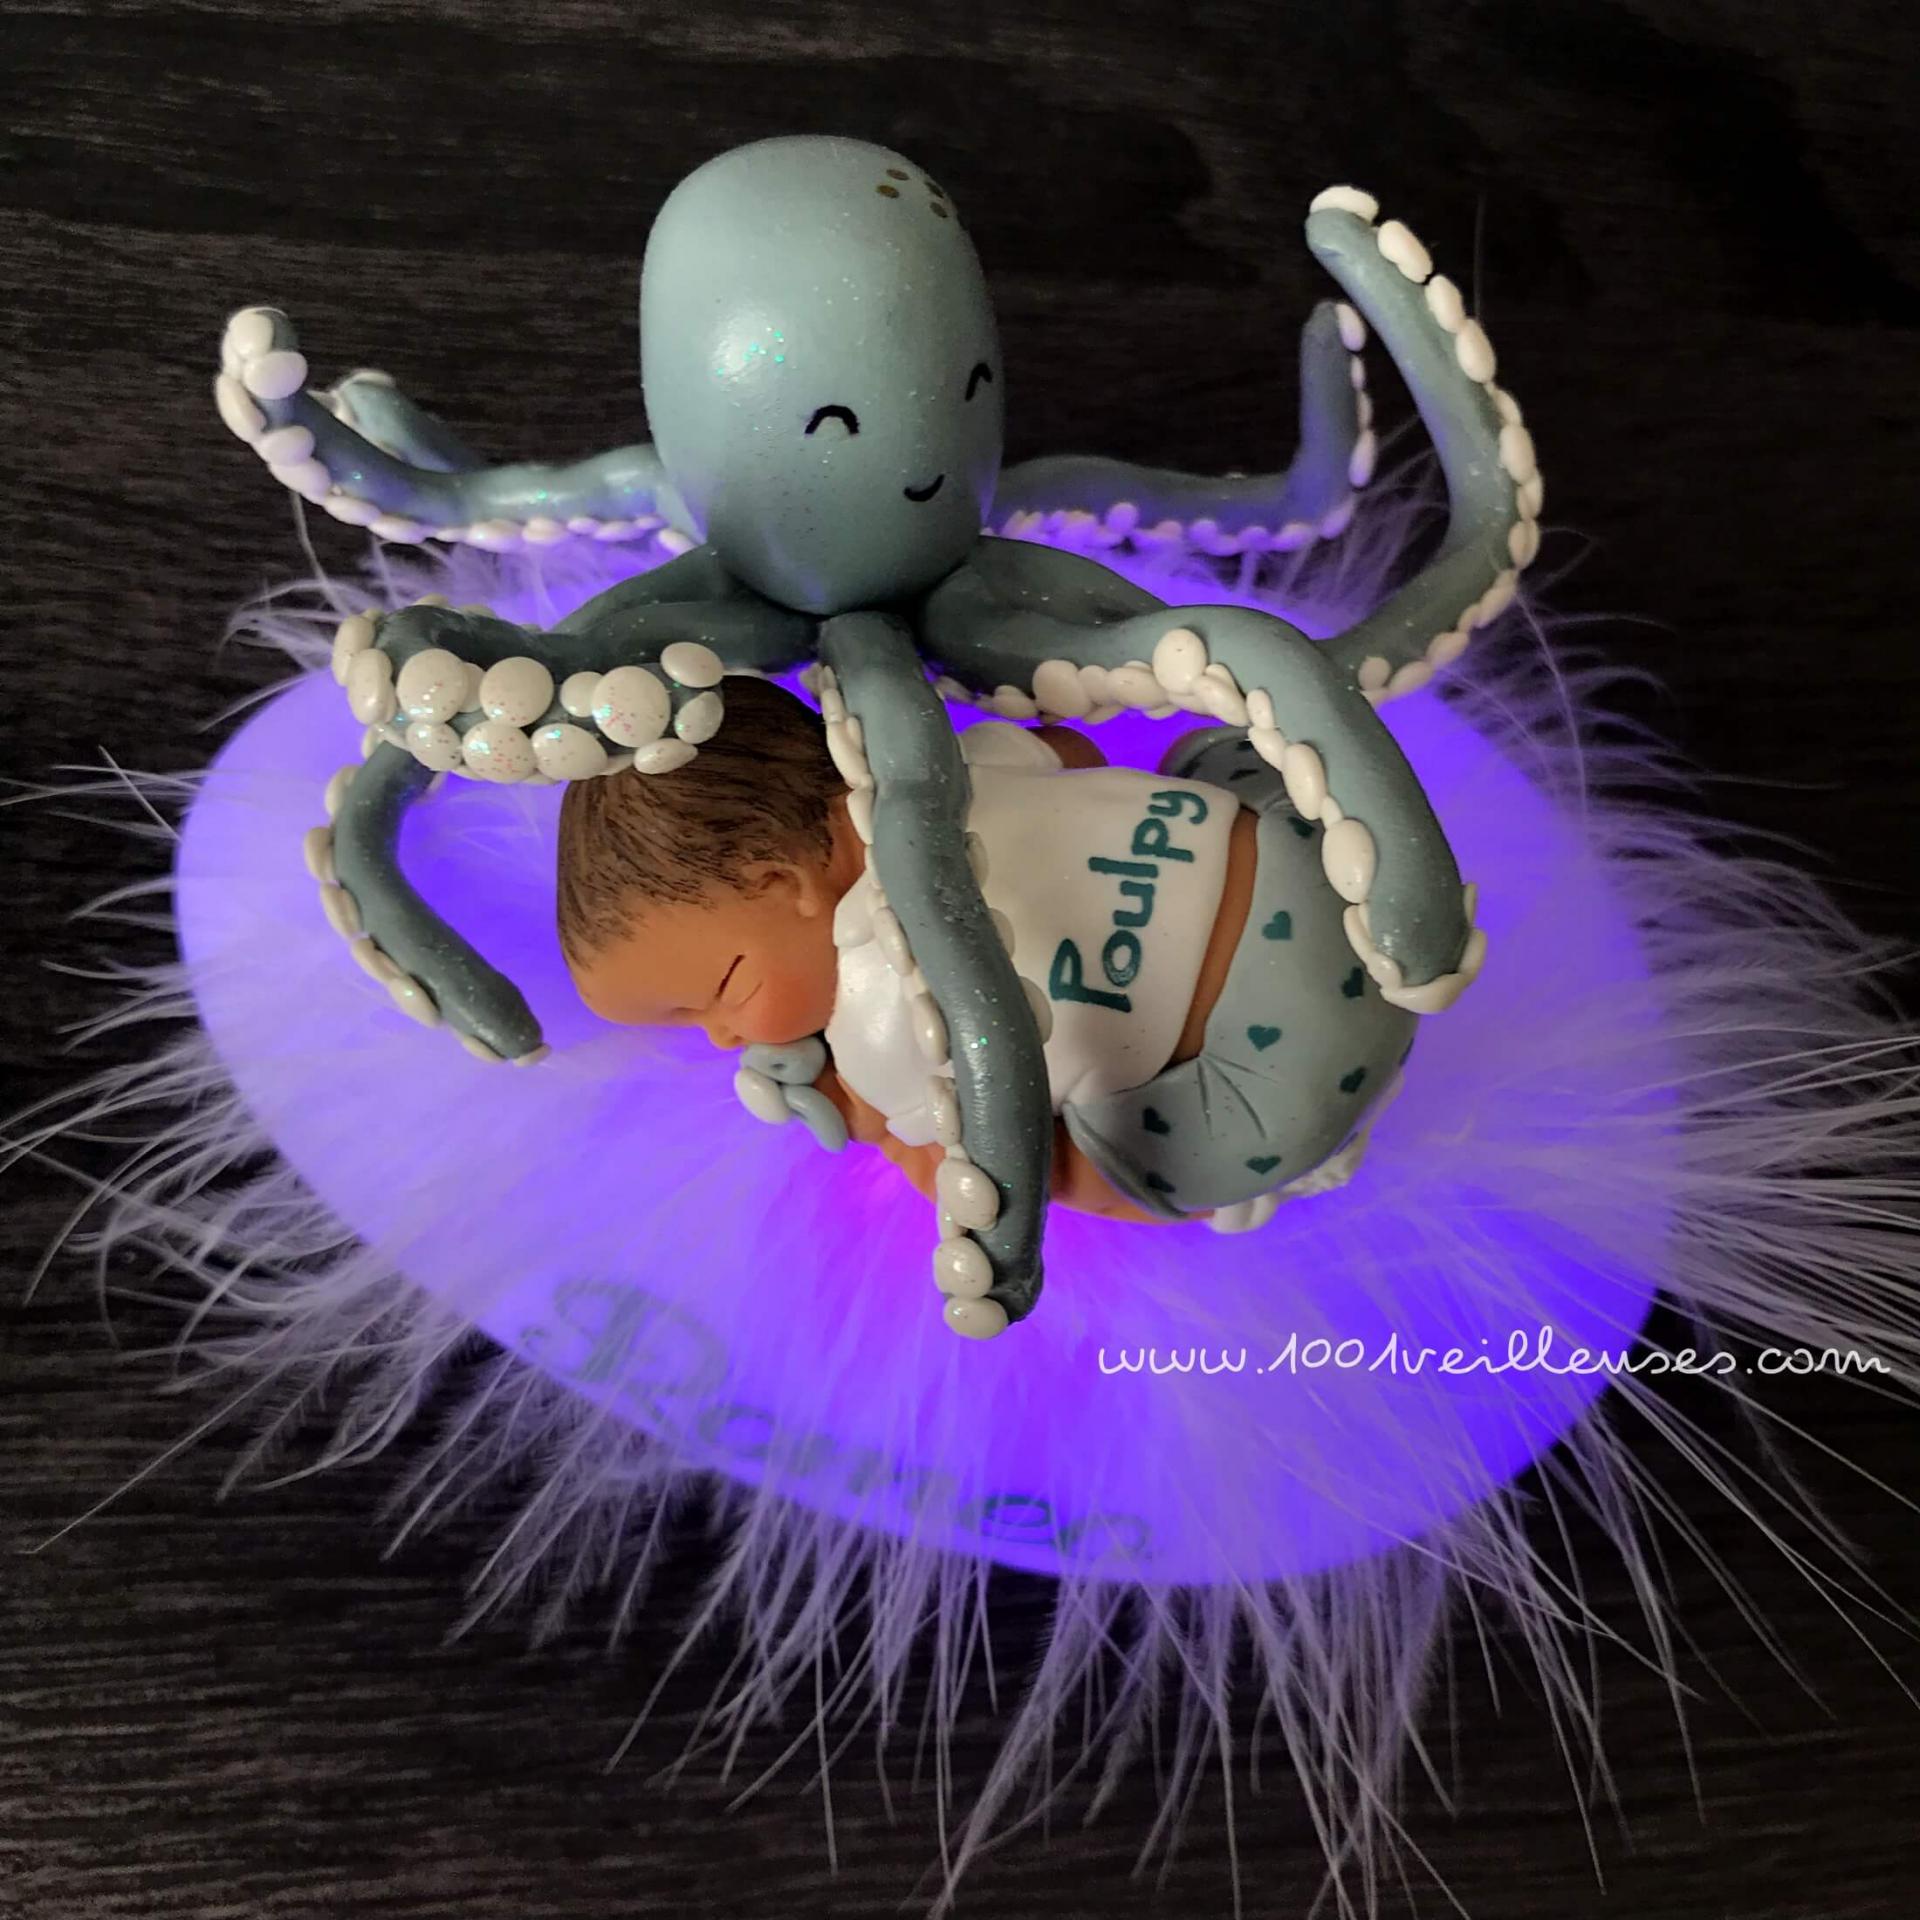 Beautiful personalized artisanal octopus night light